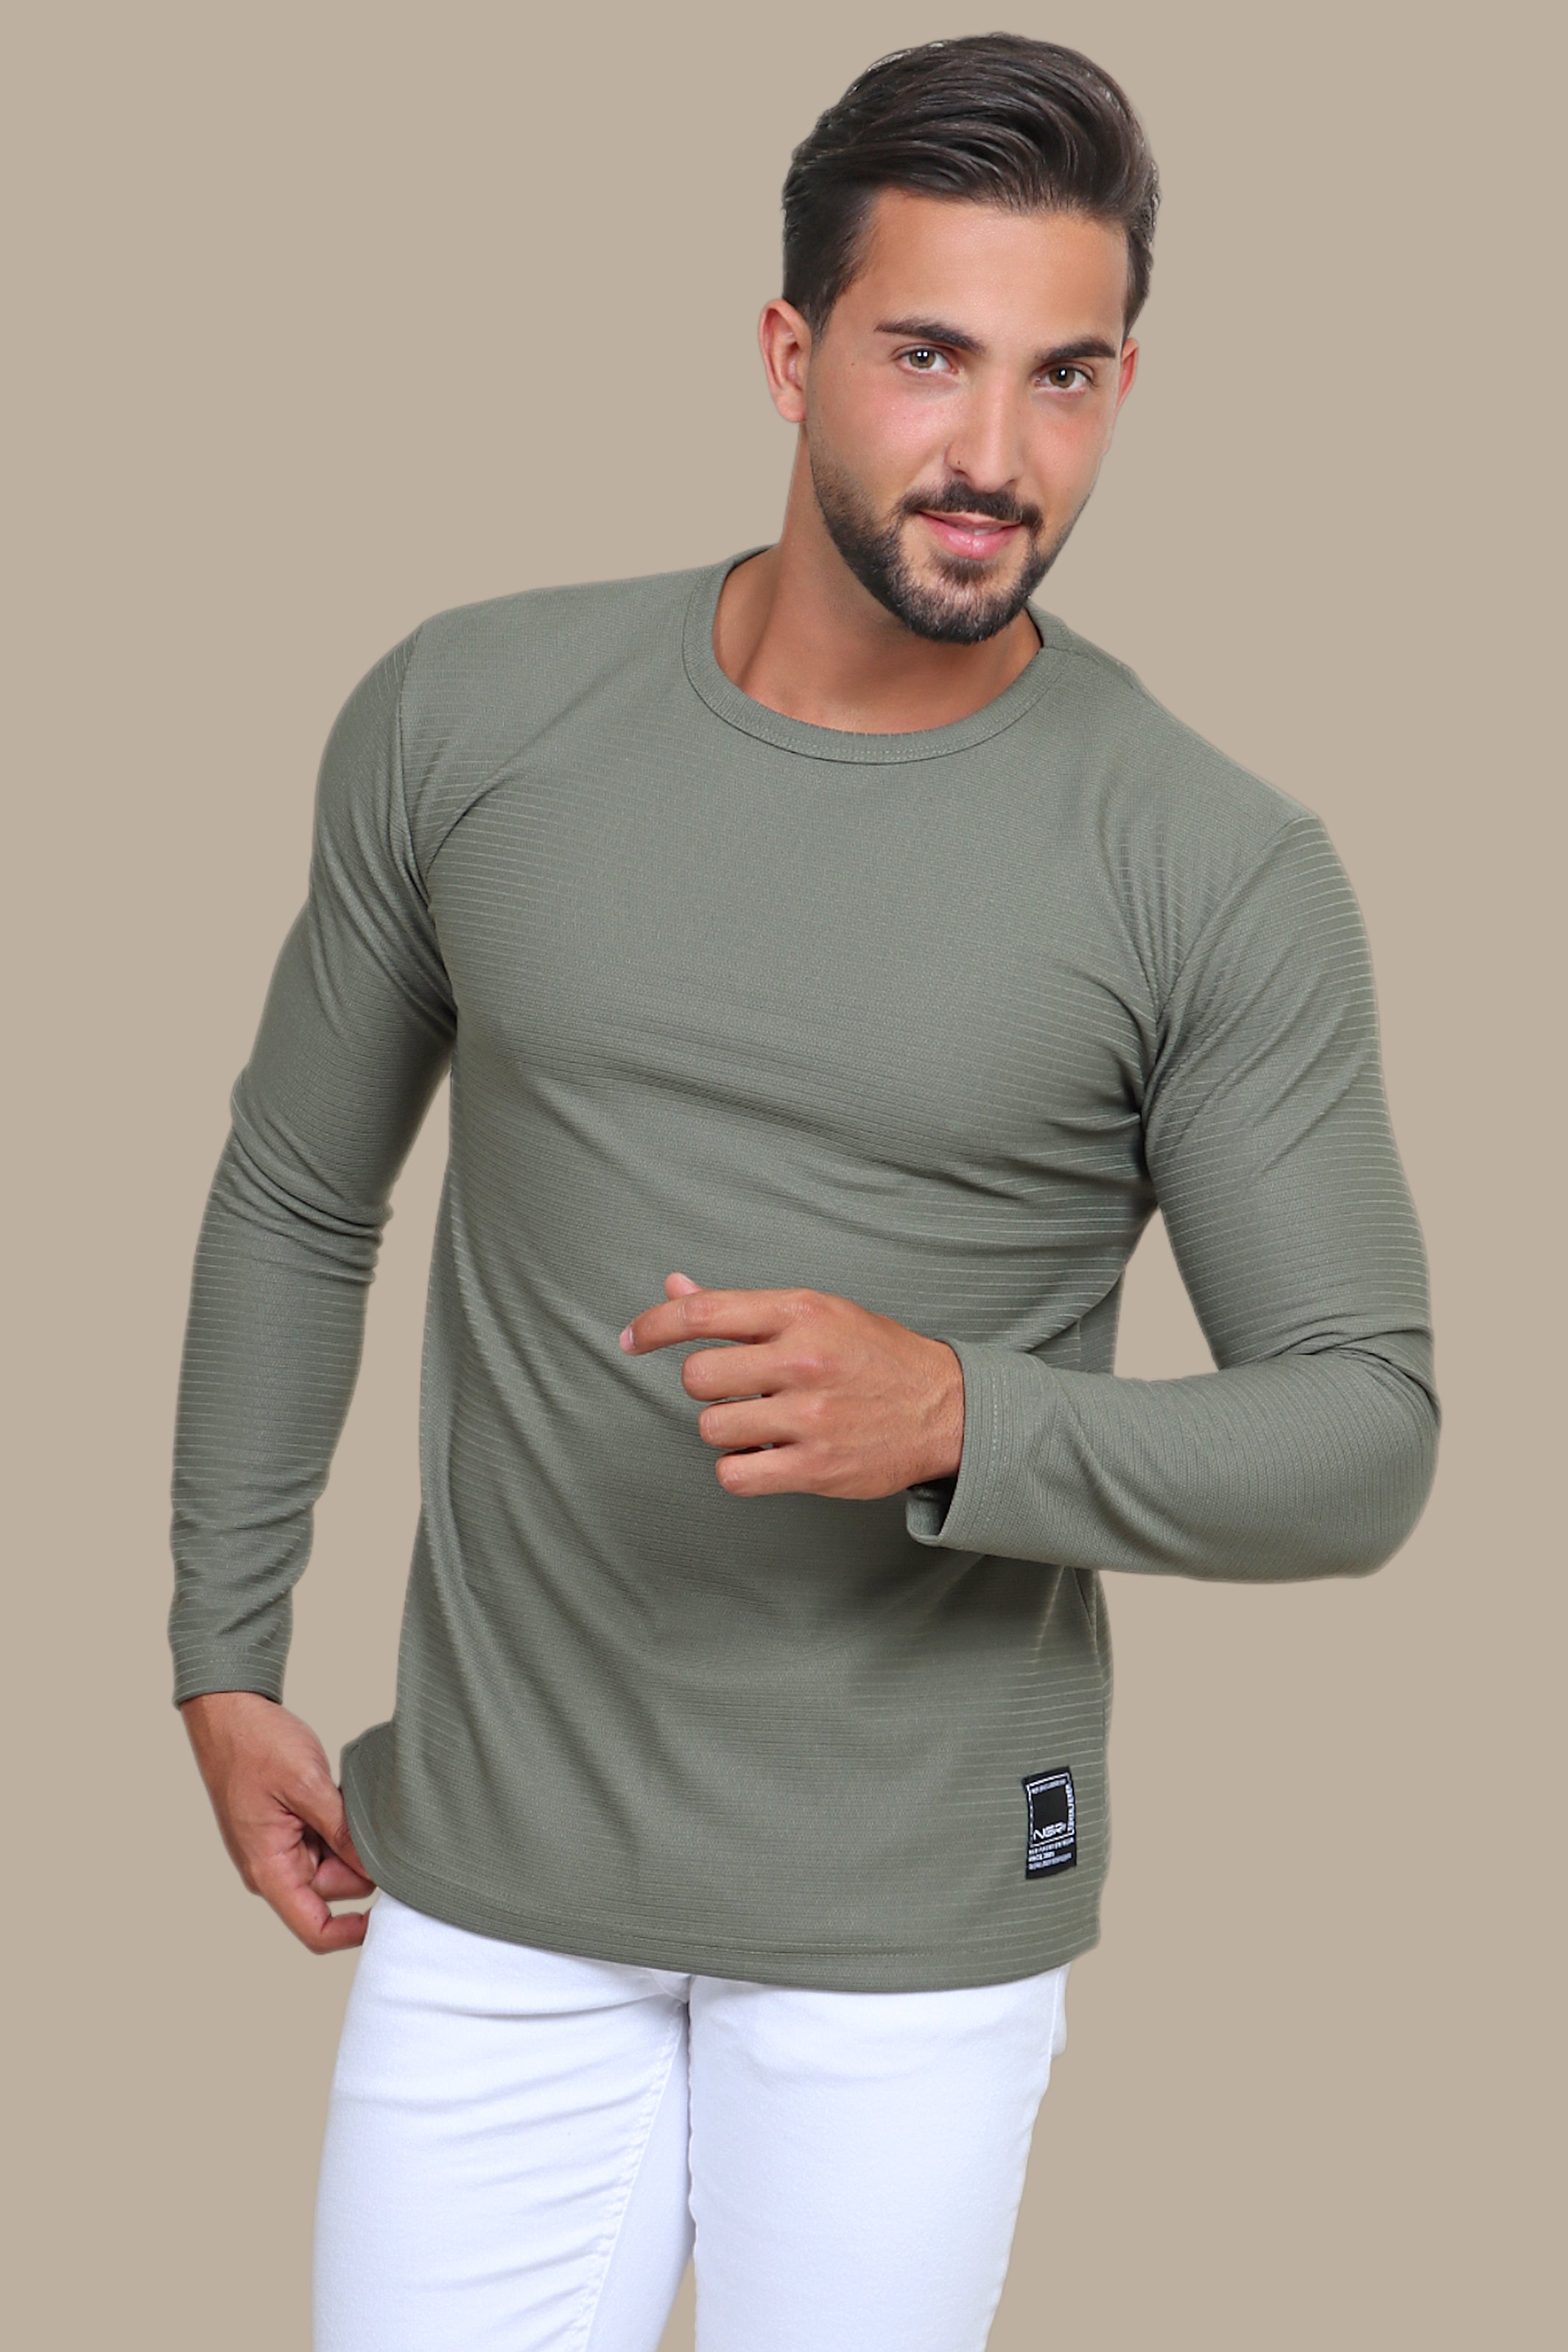 Khaki Elegance: Structured Round Neck Ribbed Sweater